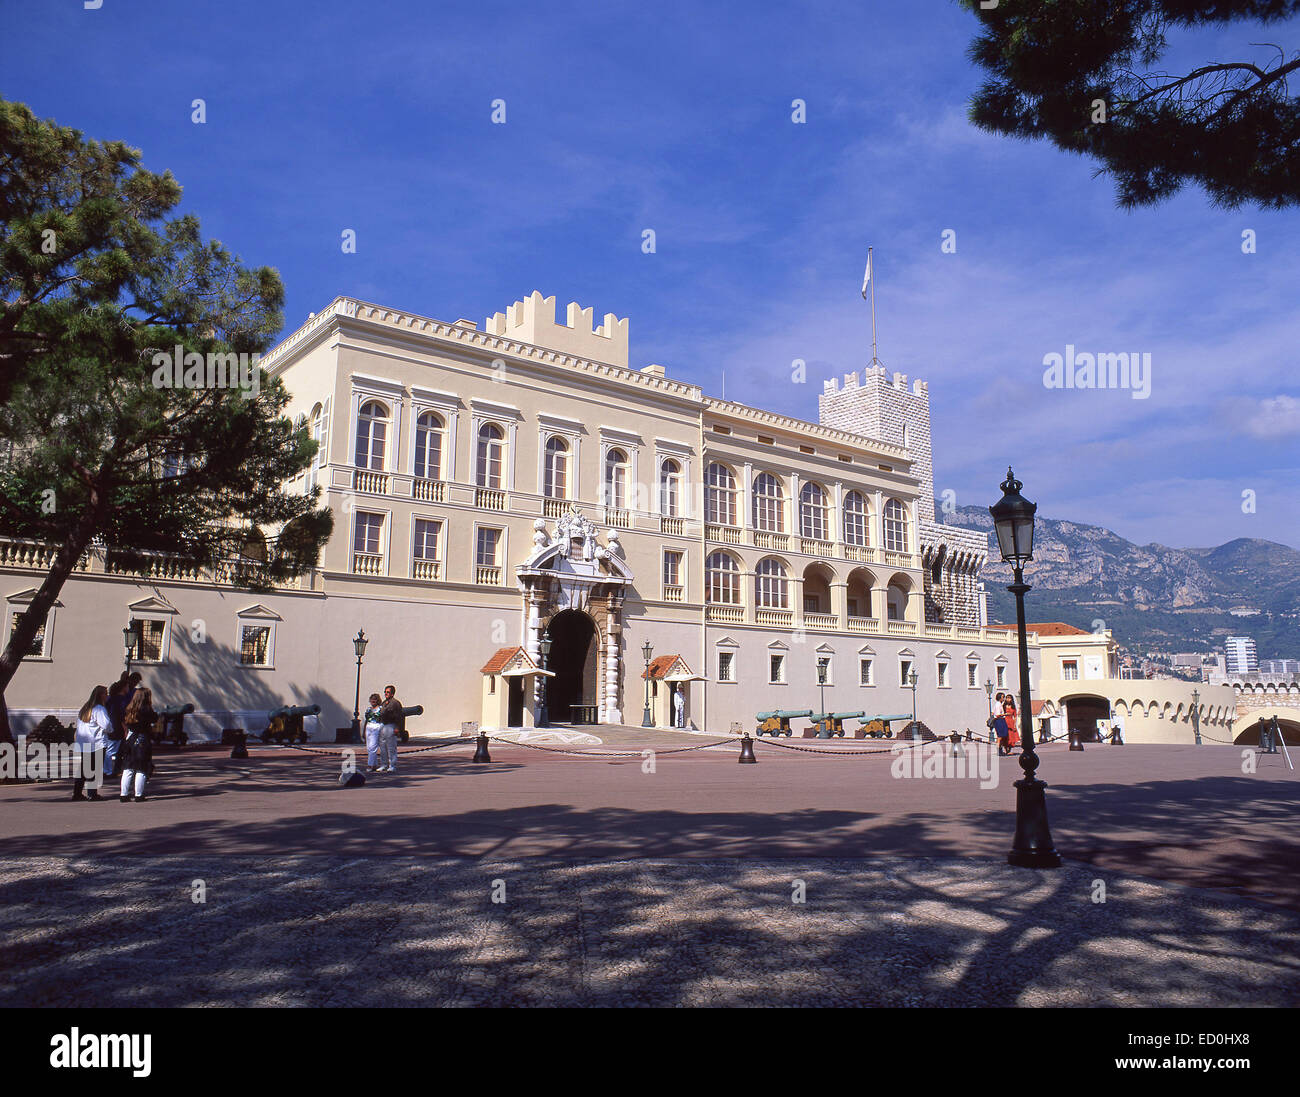 Royal guard, Palais Princier de Monaco, Place du Palais, Monaco-Ville, Principality of Monaco Stock Photo